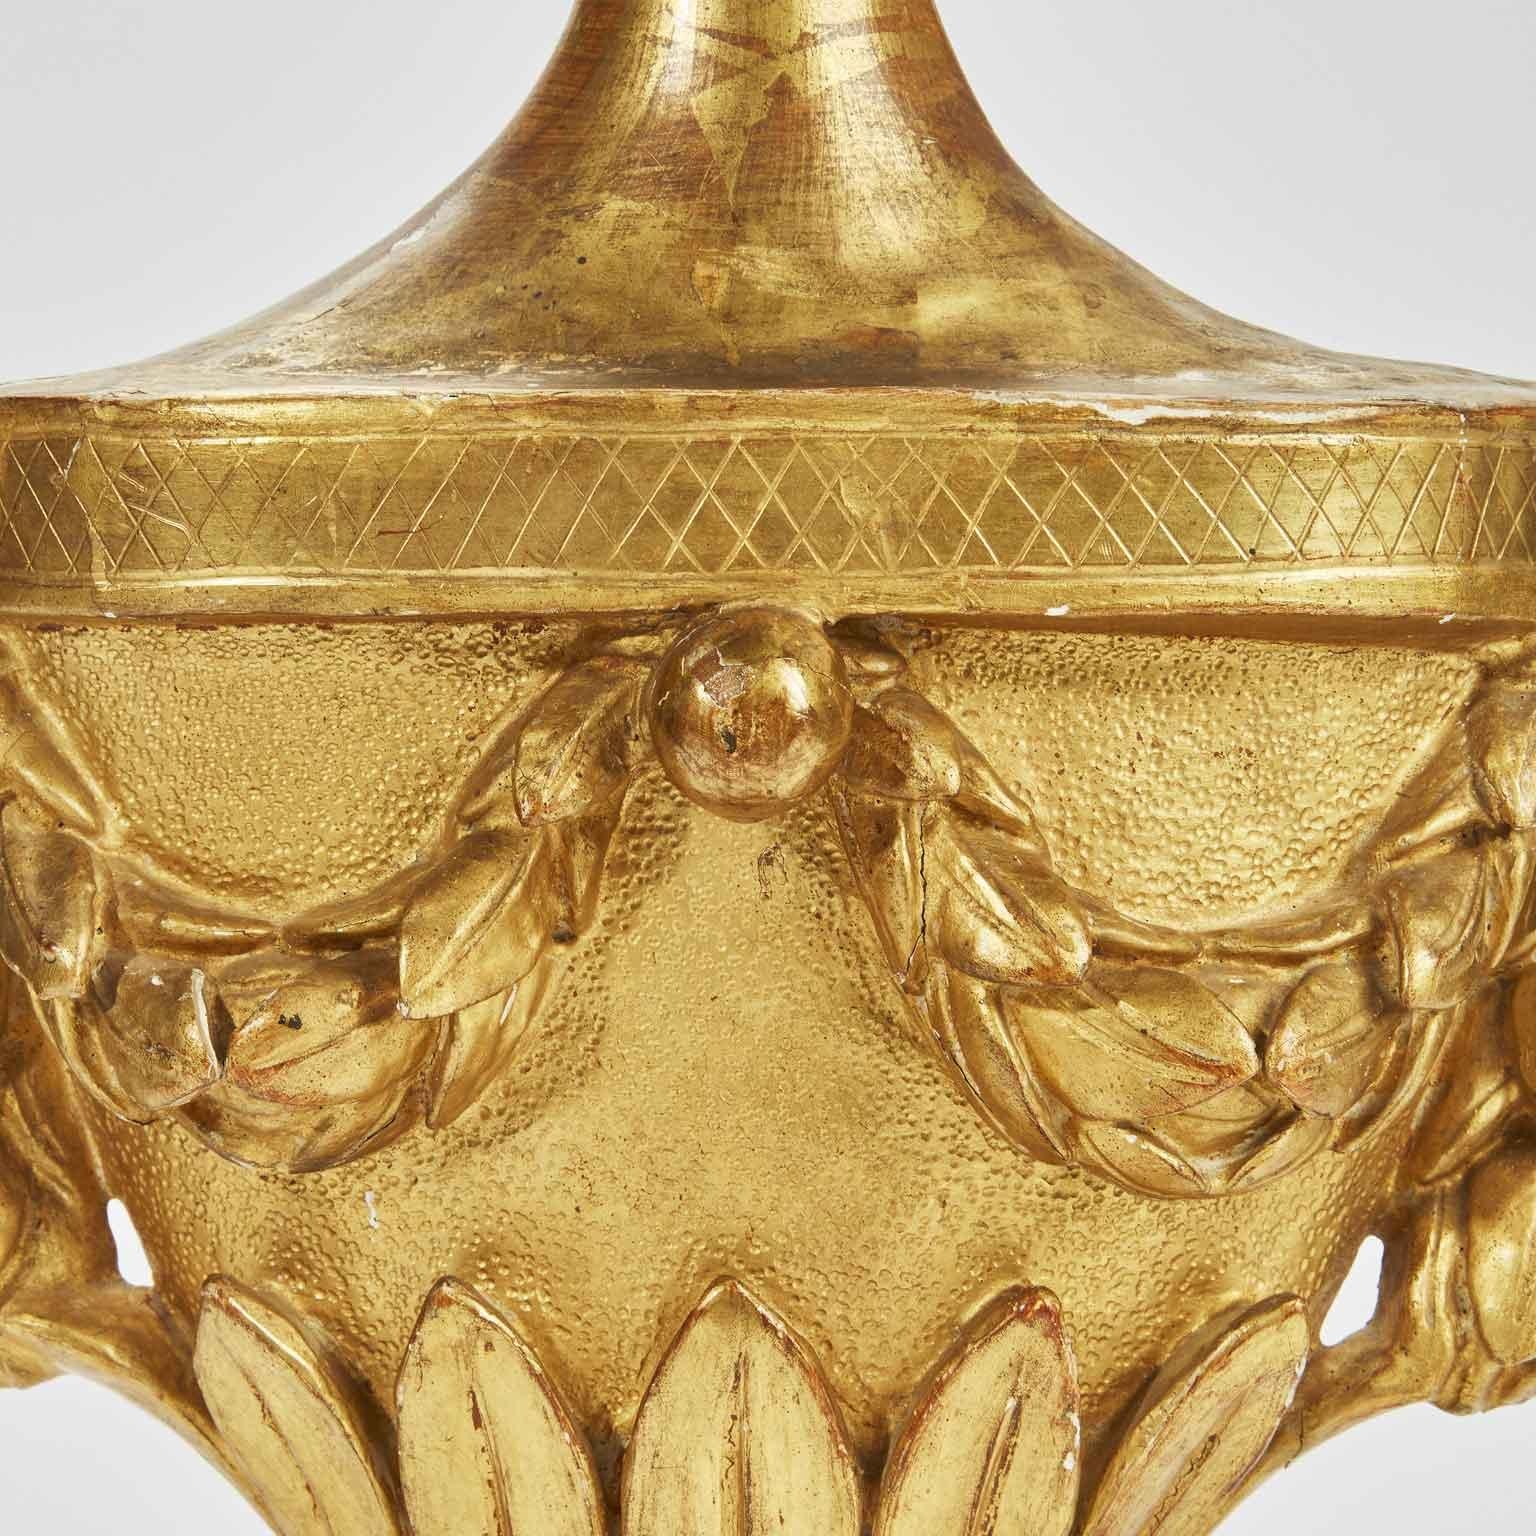 Vergoldete Empire-Applikationslampe Ende des 17. Jahrhunderts aus einer geschnitzten, fein vergoldeten Holzpalmenvase, die in eine Wandleuchte umgewandelt wurde, um sie als Wandlampe zu verwenden. Auf der Rückseite dieser Lampe sind noch die Spuren